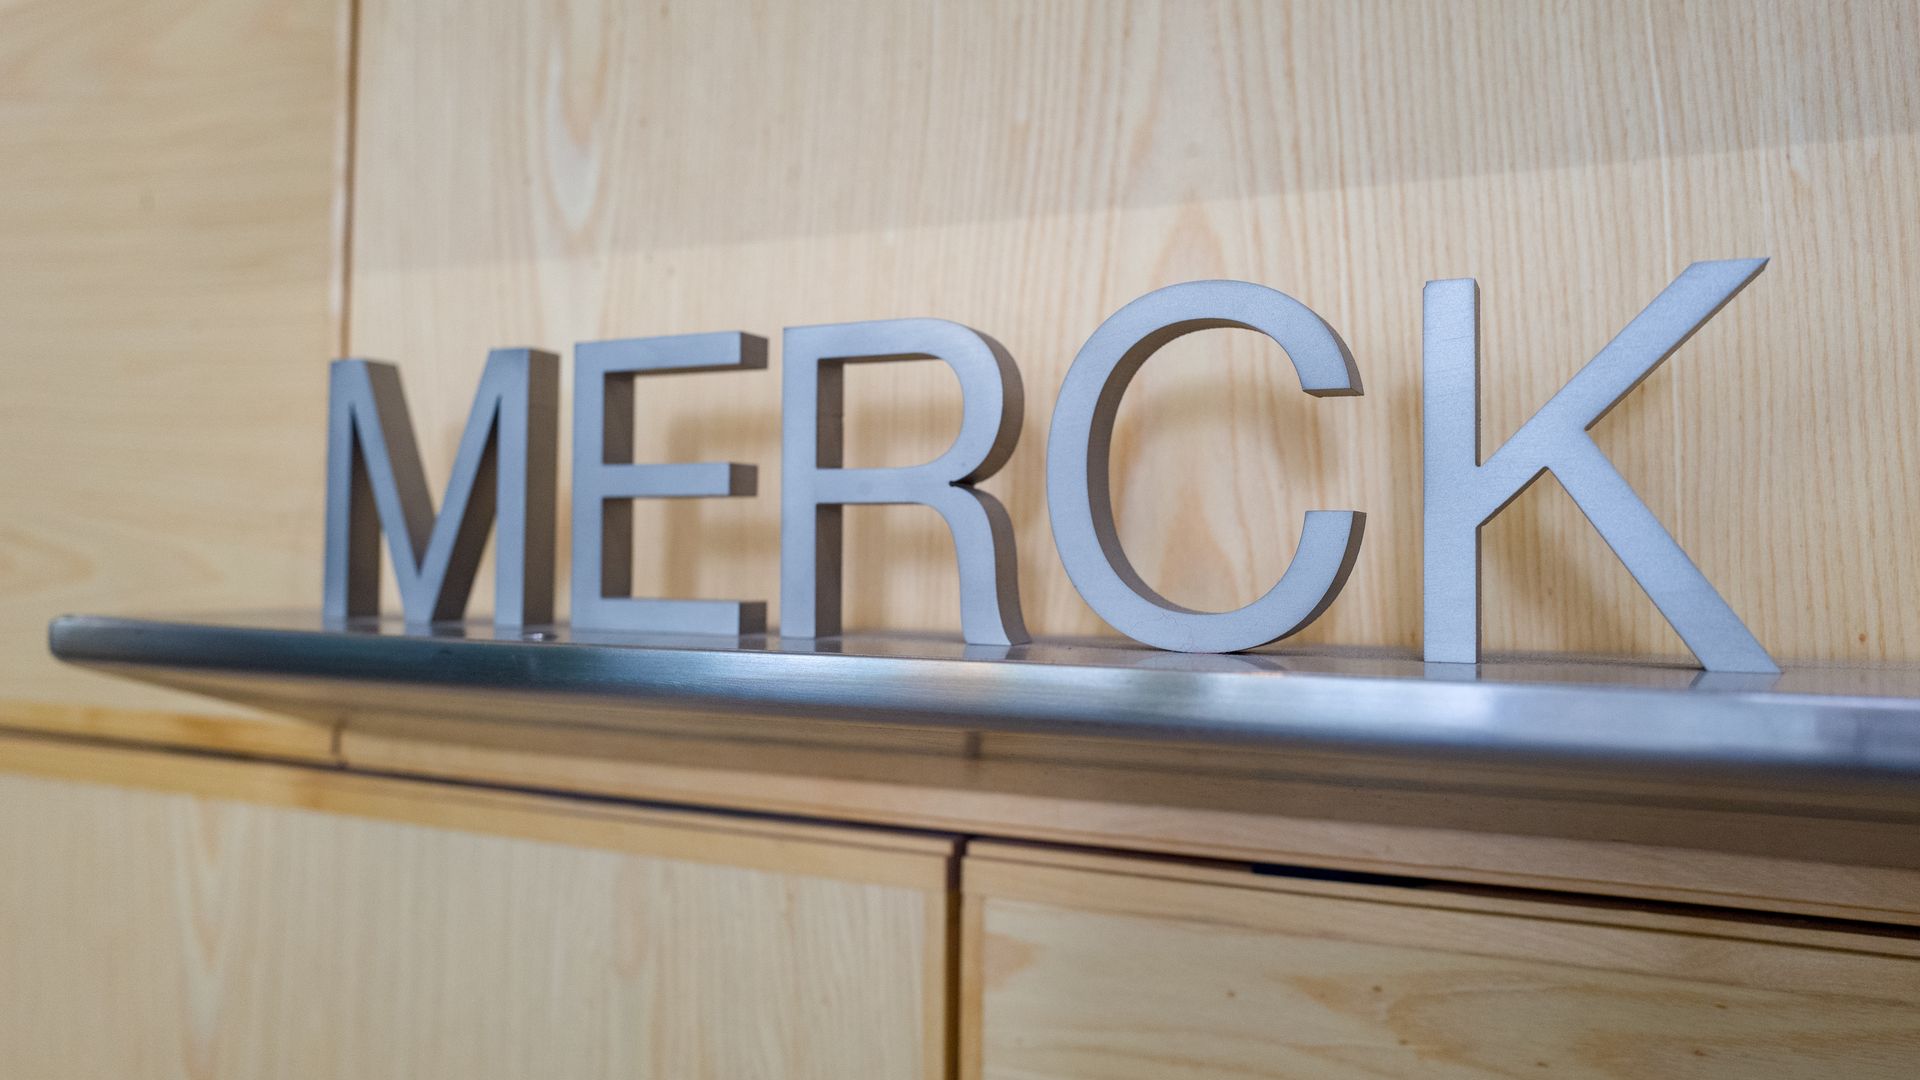 A Merck logo.